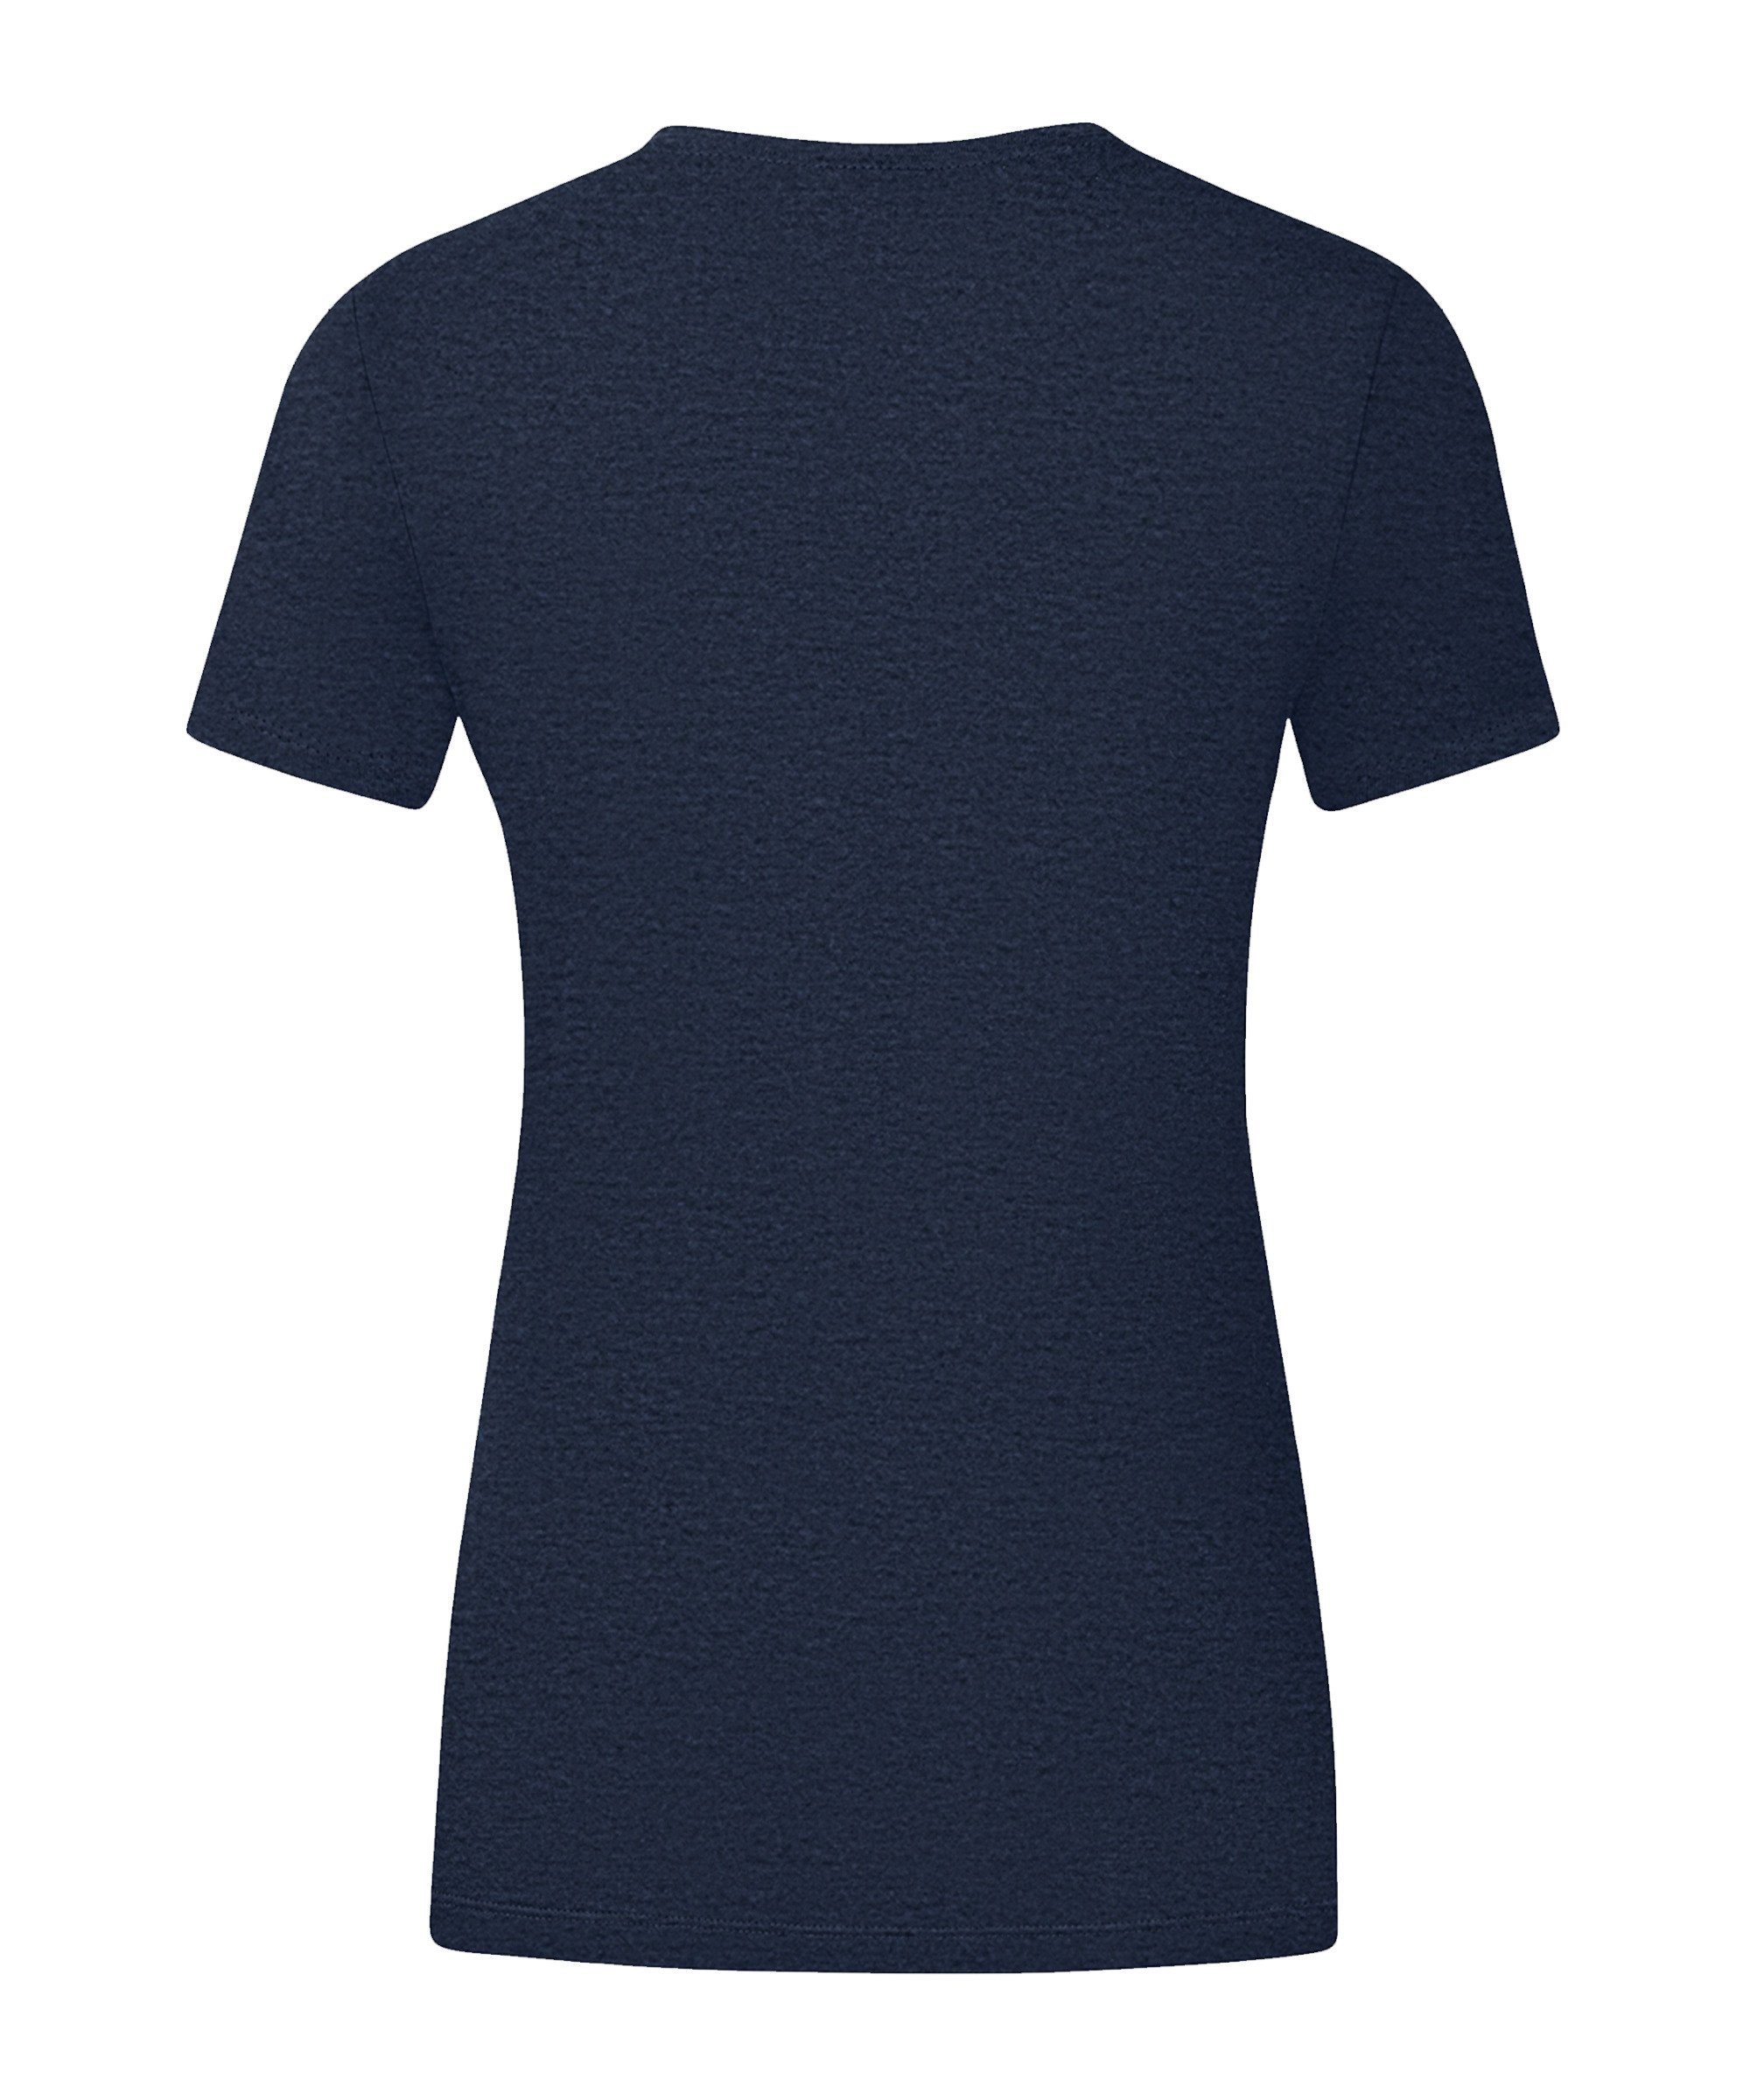 T-Shirt blaugelb Jako Damen default T-Shirt Promo